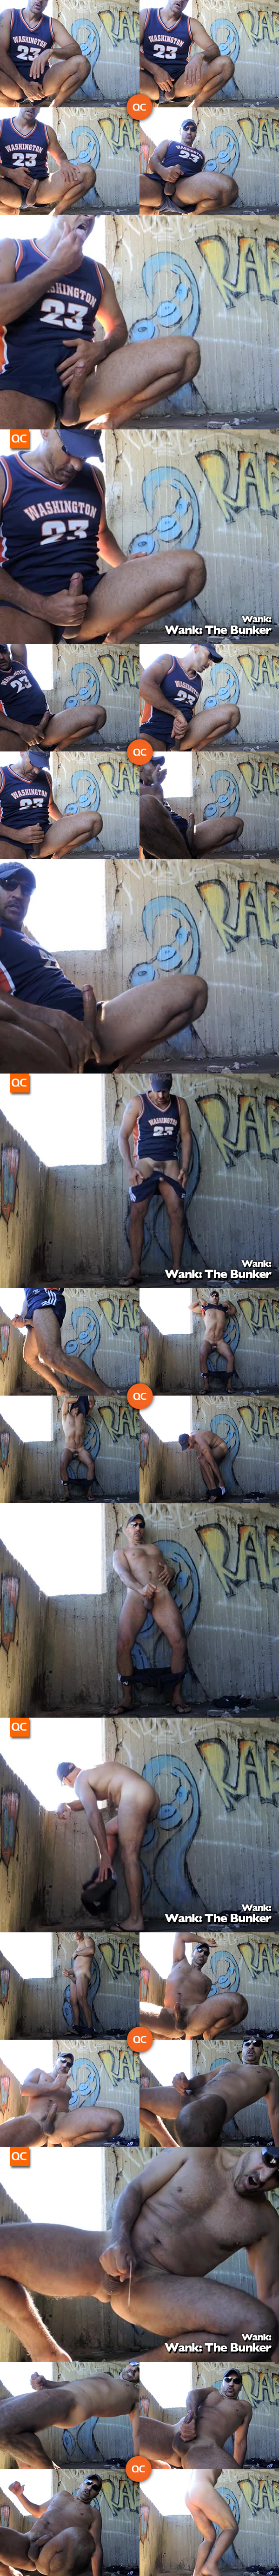 Wank: The Bunker